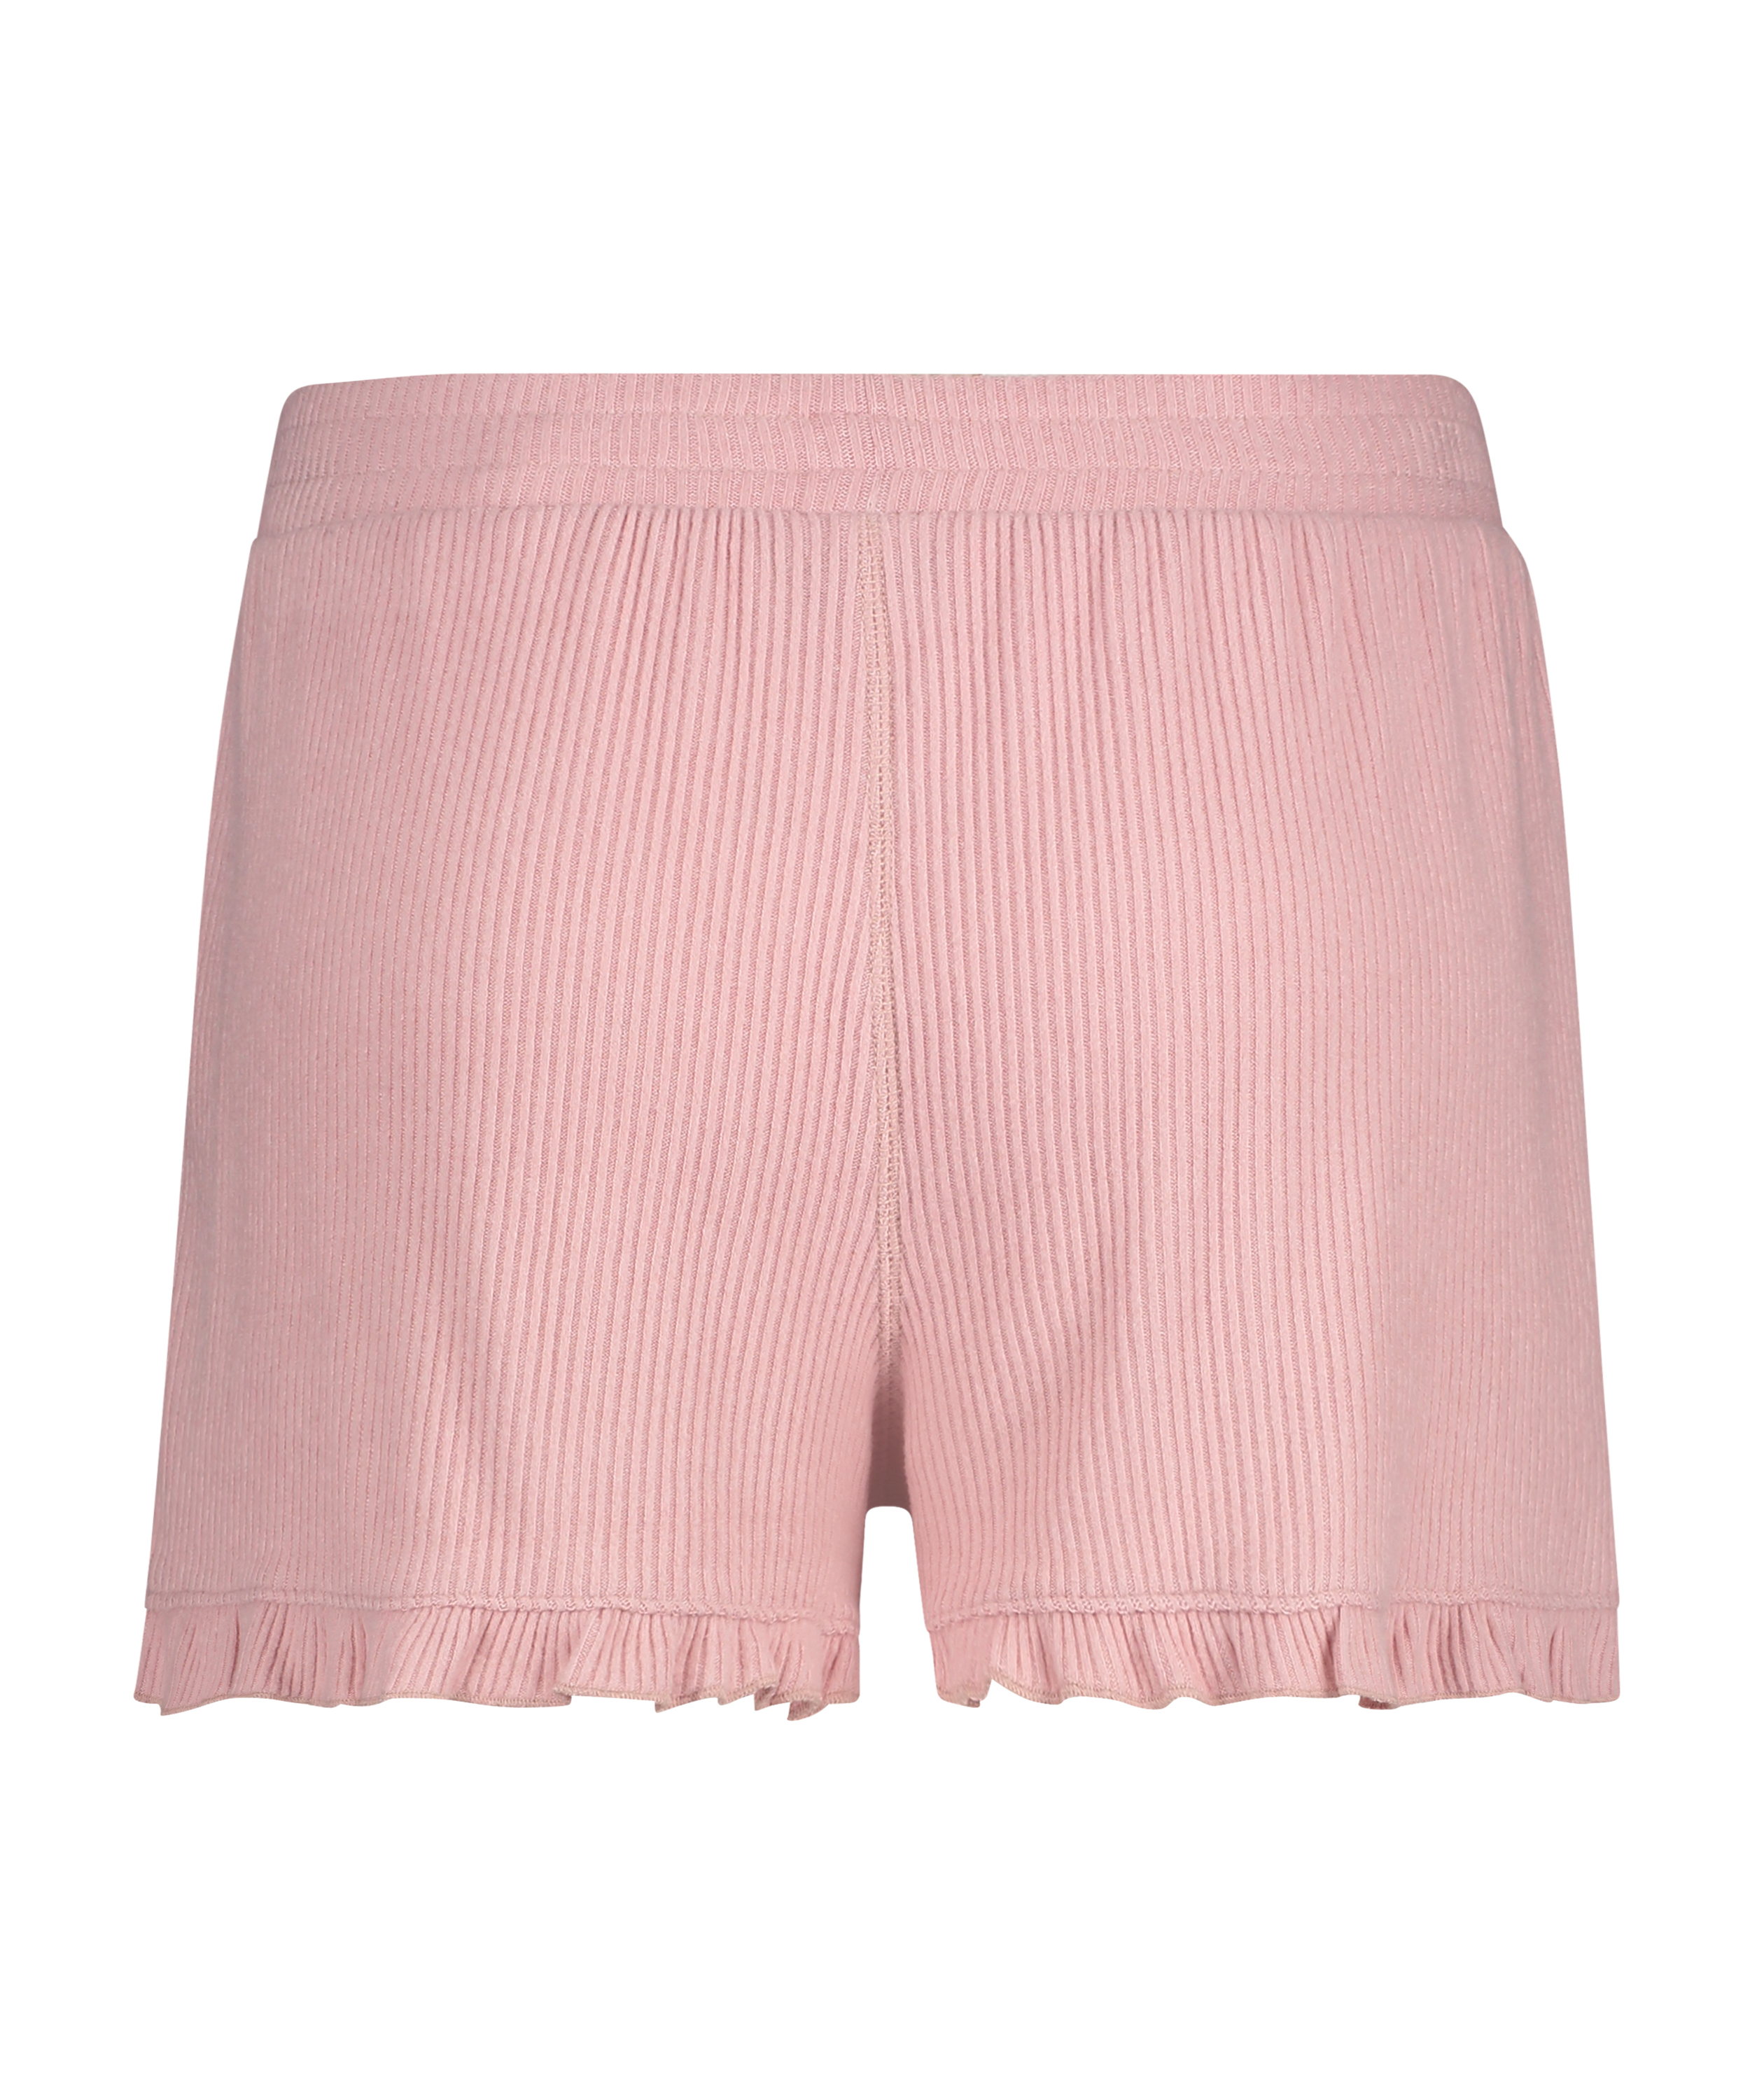 Brushed Rib Lace shorts, Pink, main